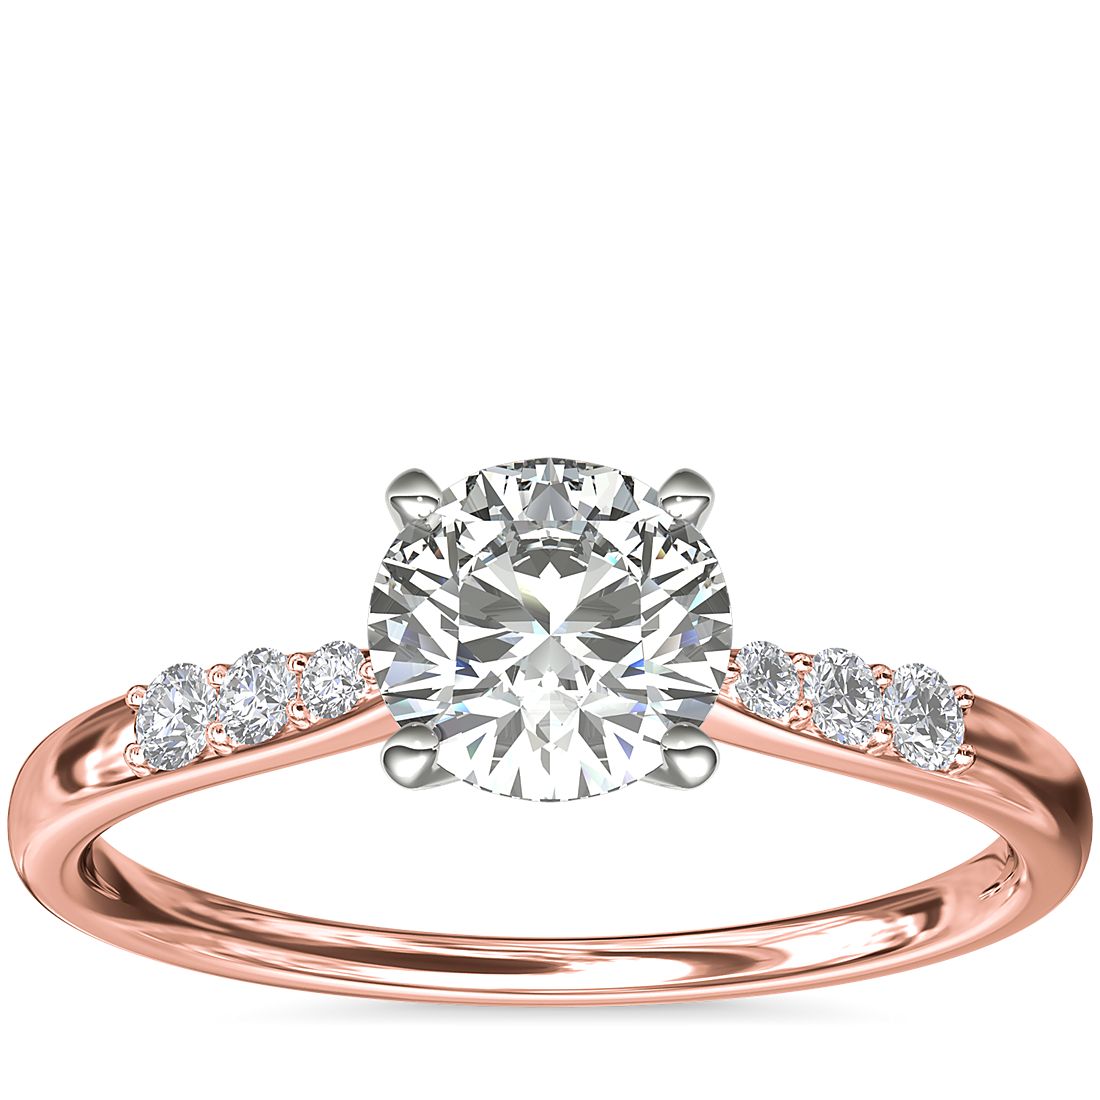 Anillo de compromiso de oro rosado con un diamante redondo de 1 quilate.